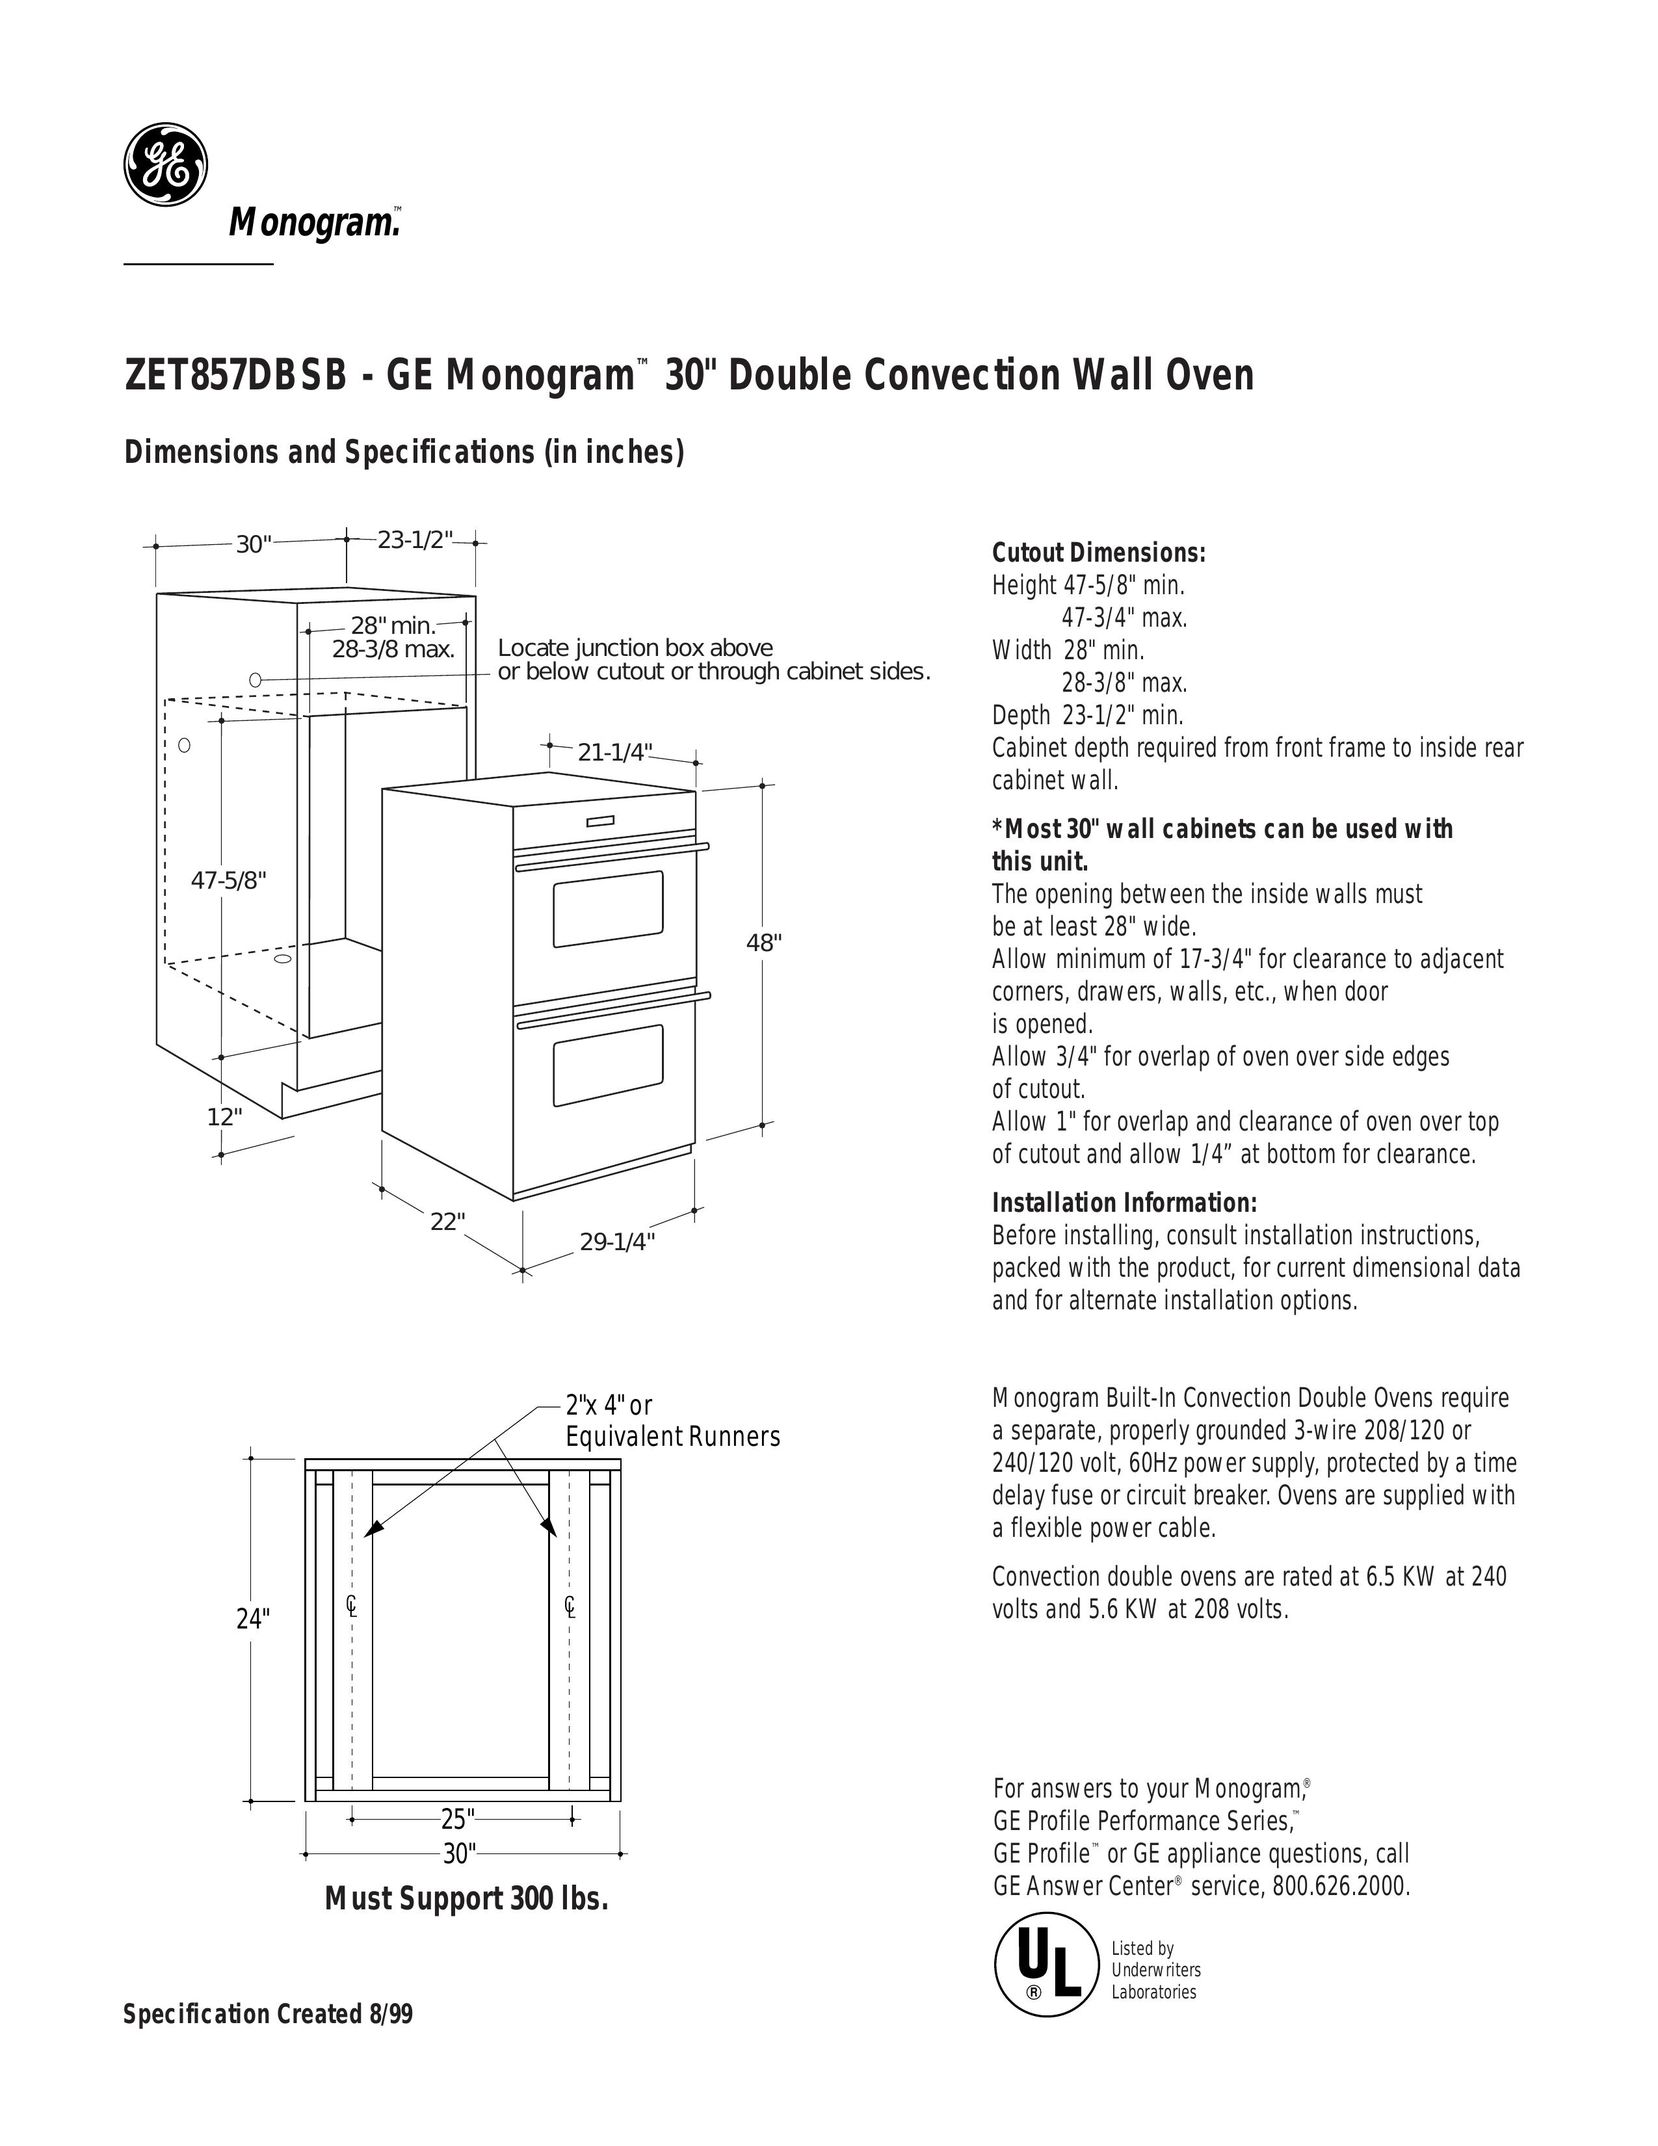 GE Monogram ZET857DBSB Double Oven User Manual